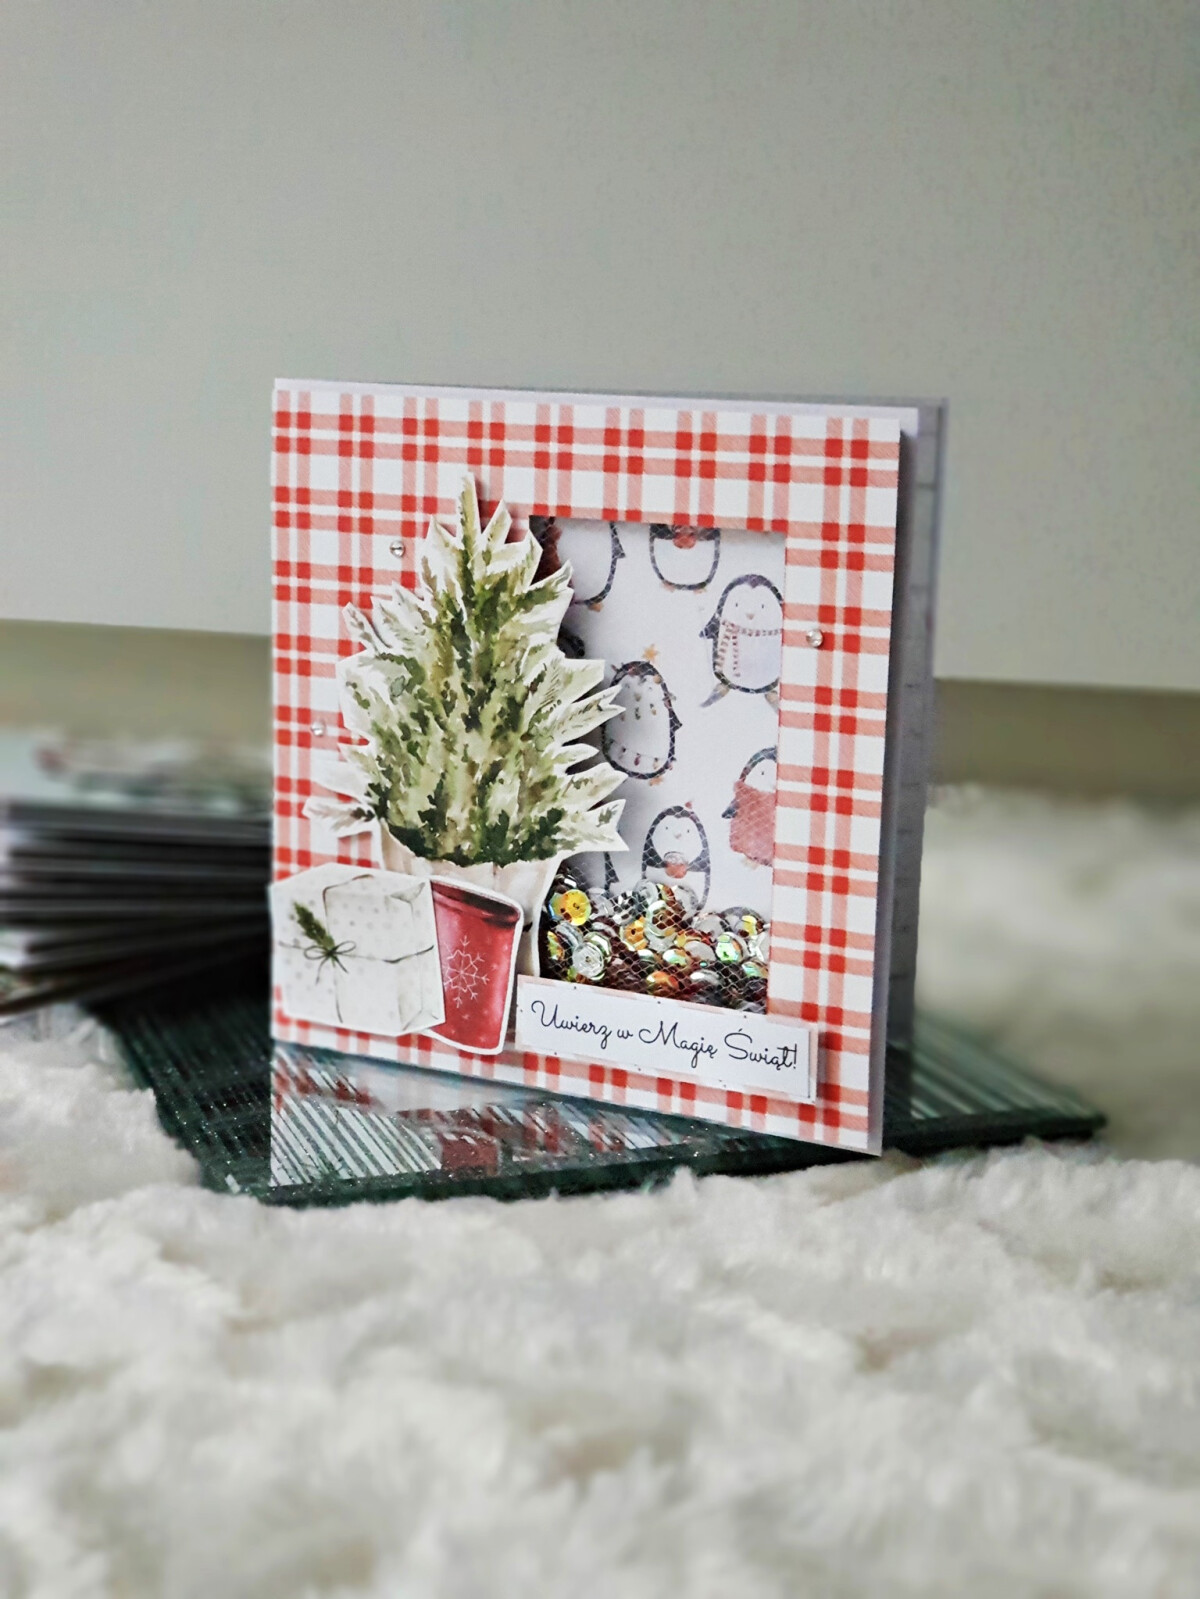 Kartka świąteczna - choinka rustykalna shaker card